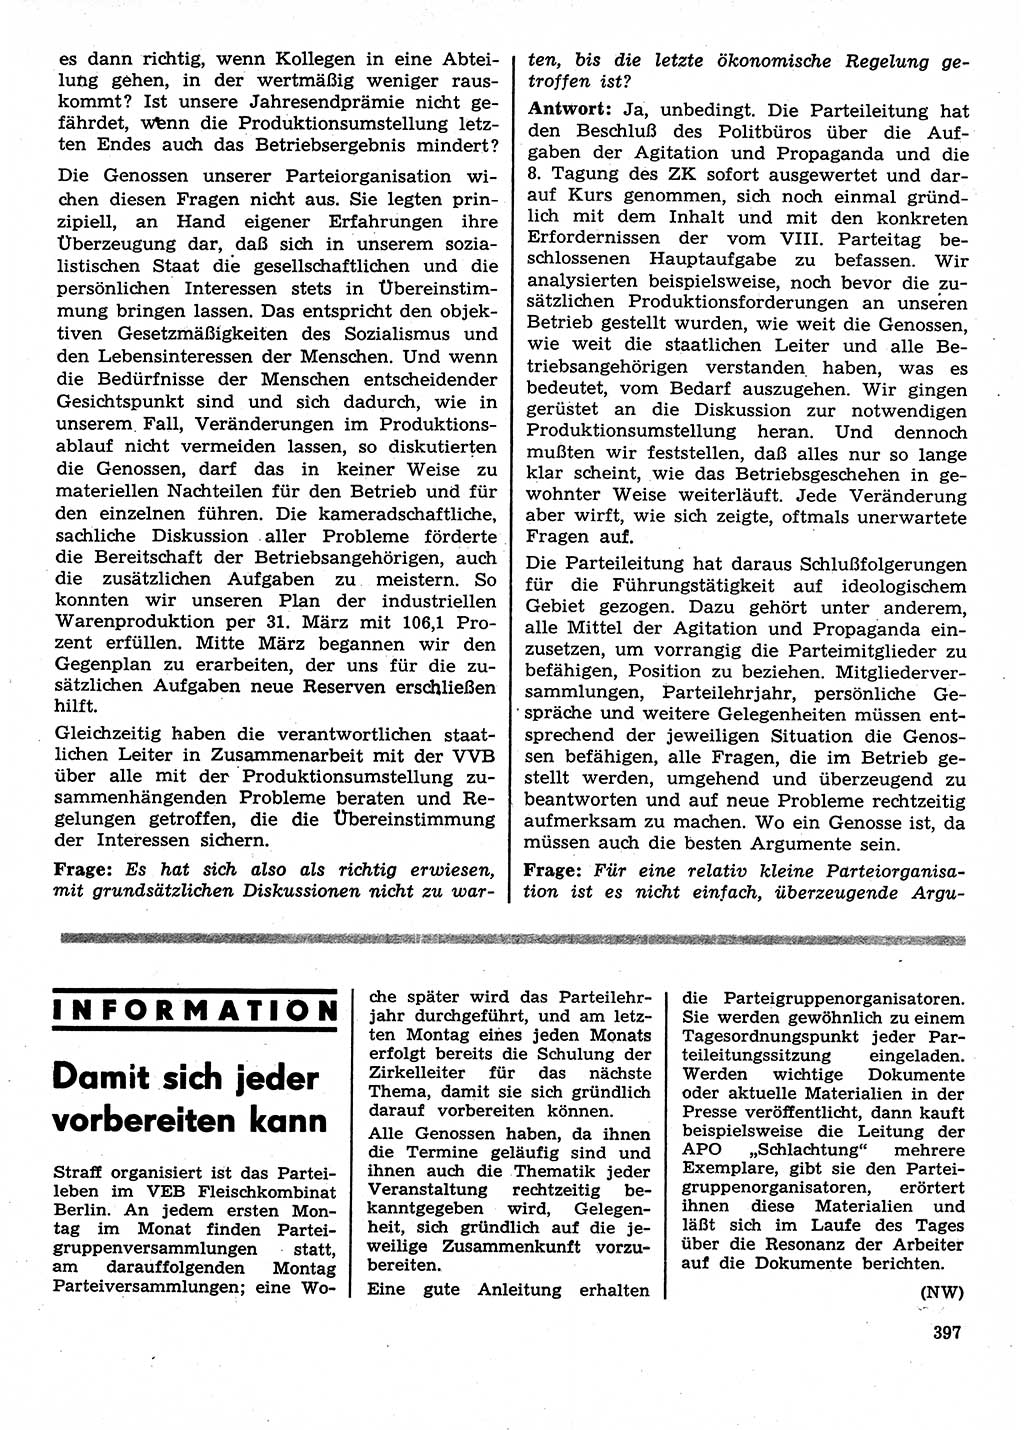 Neuer Weg (NW), Organ des Zentralkomitees (ZK) der SED (Sozialistische Einheitspartei Deutschlands) für Fragen des Parteilebens, 28. Jahrgang [Deutsche Demokratische Republik (DDR)] 1973, Seite 397 (NW ZK SED DDR 1973, S. 397)